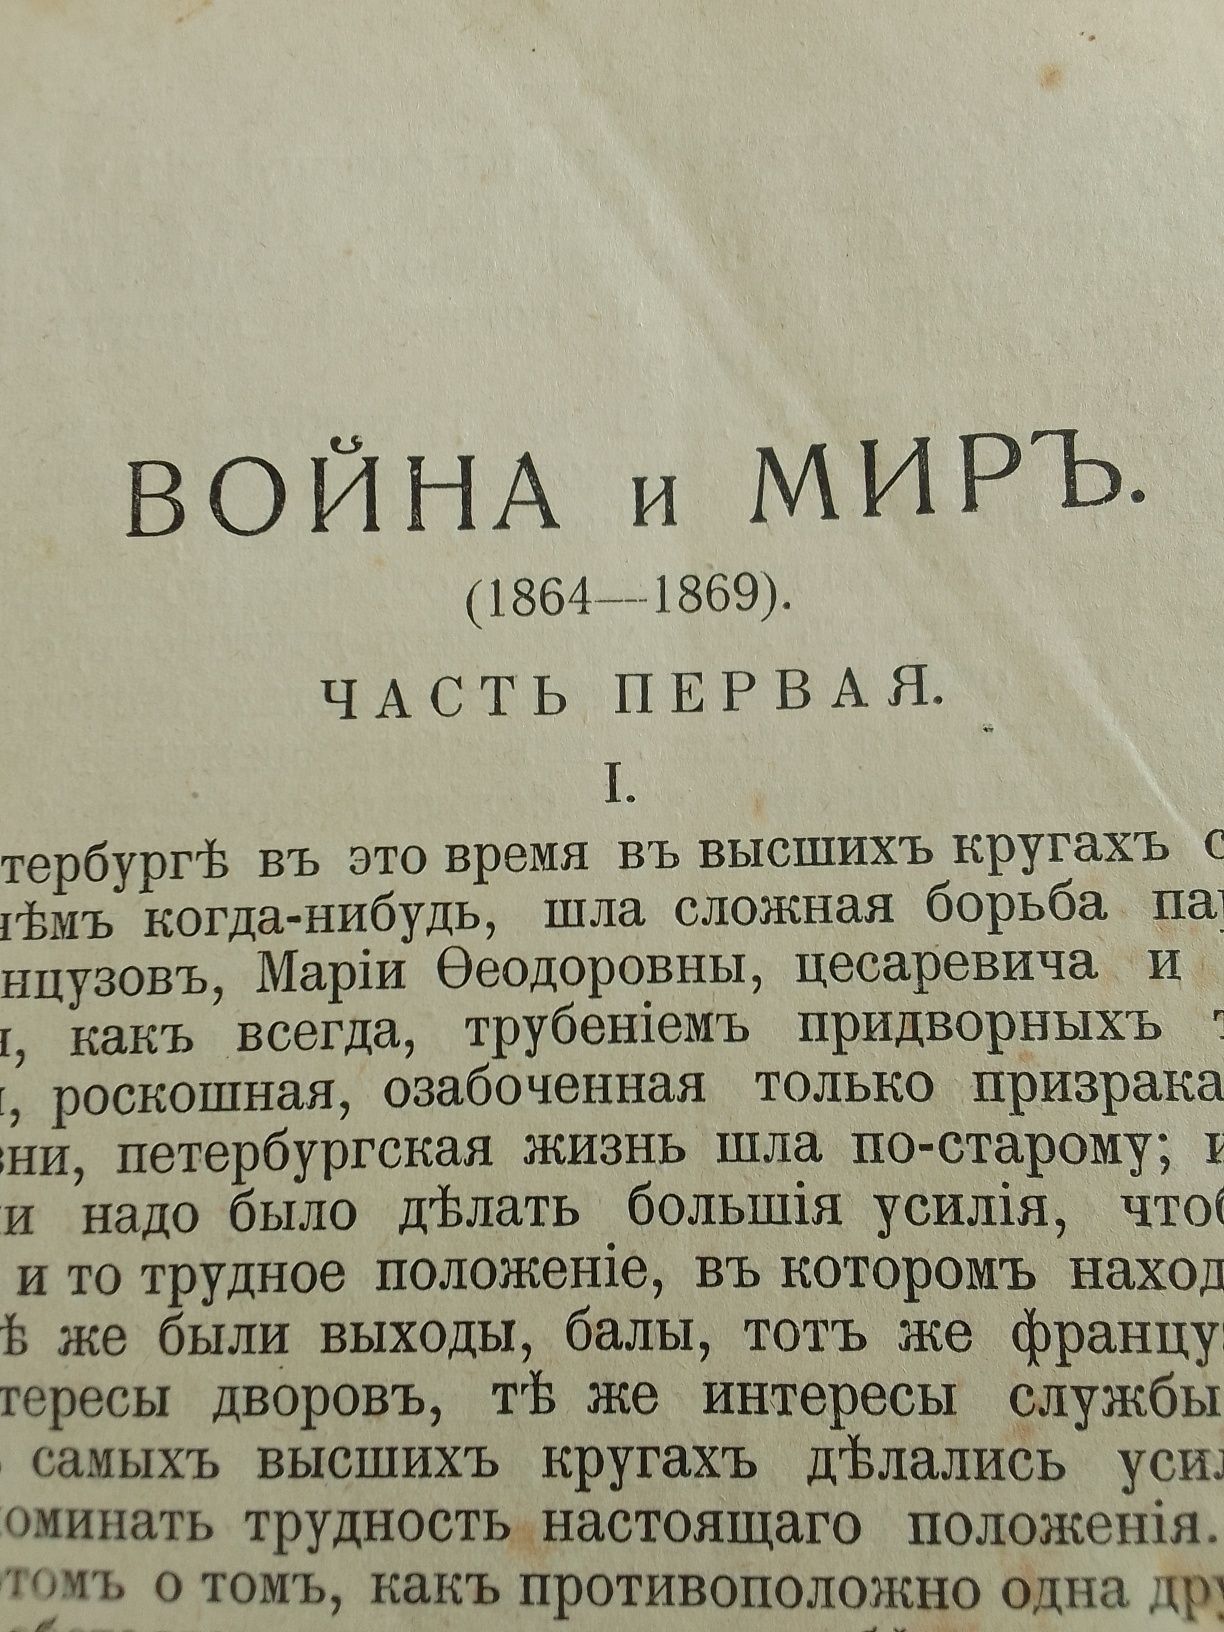 Полное собрание соч.Л.Н.Толстого 7-8  том .1913 г.издания.